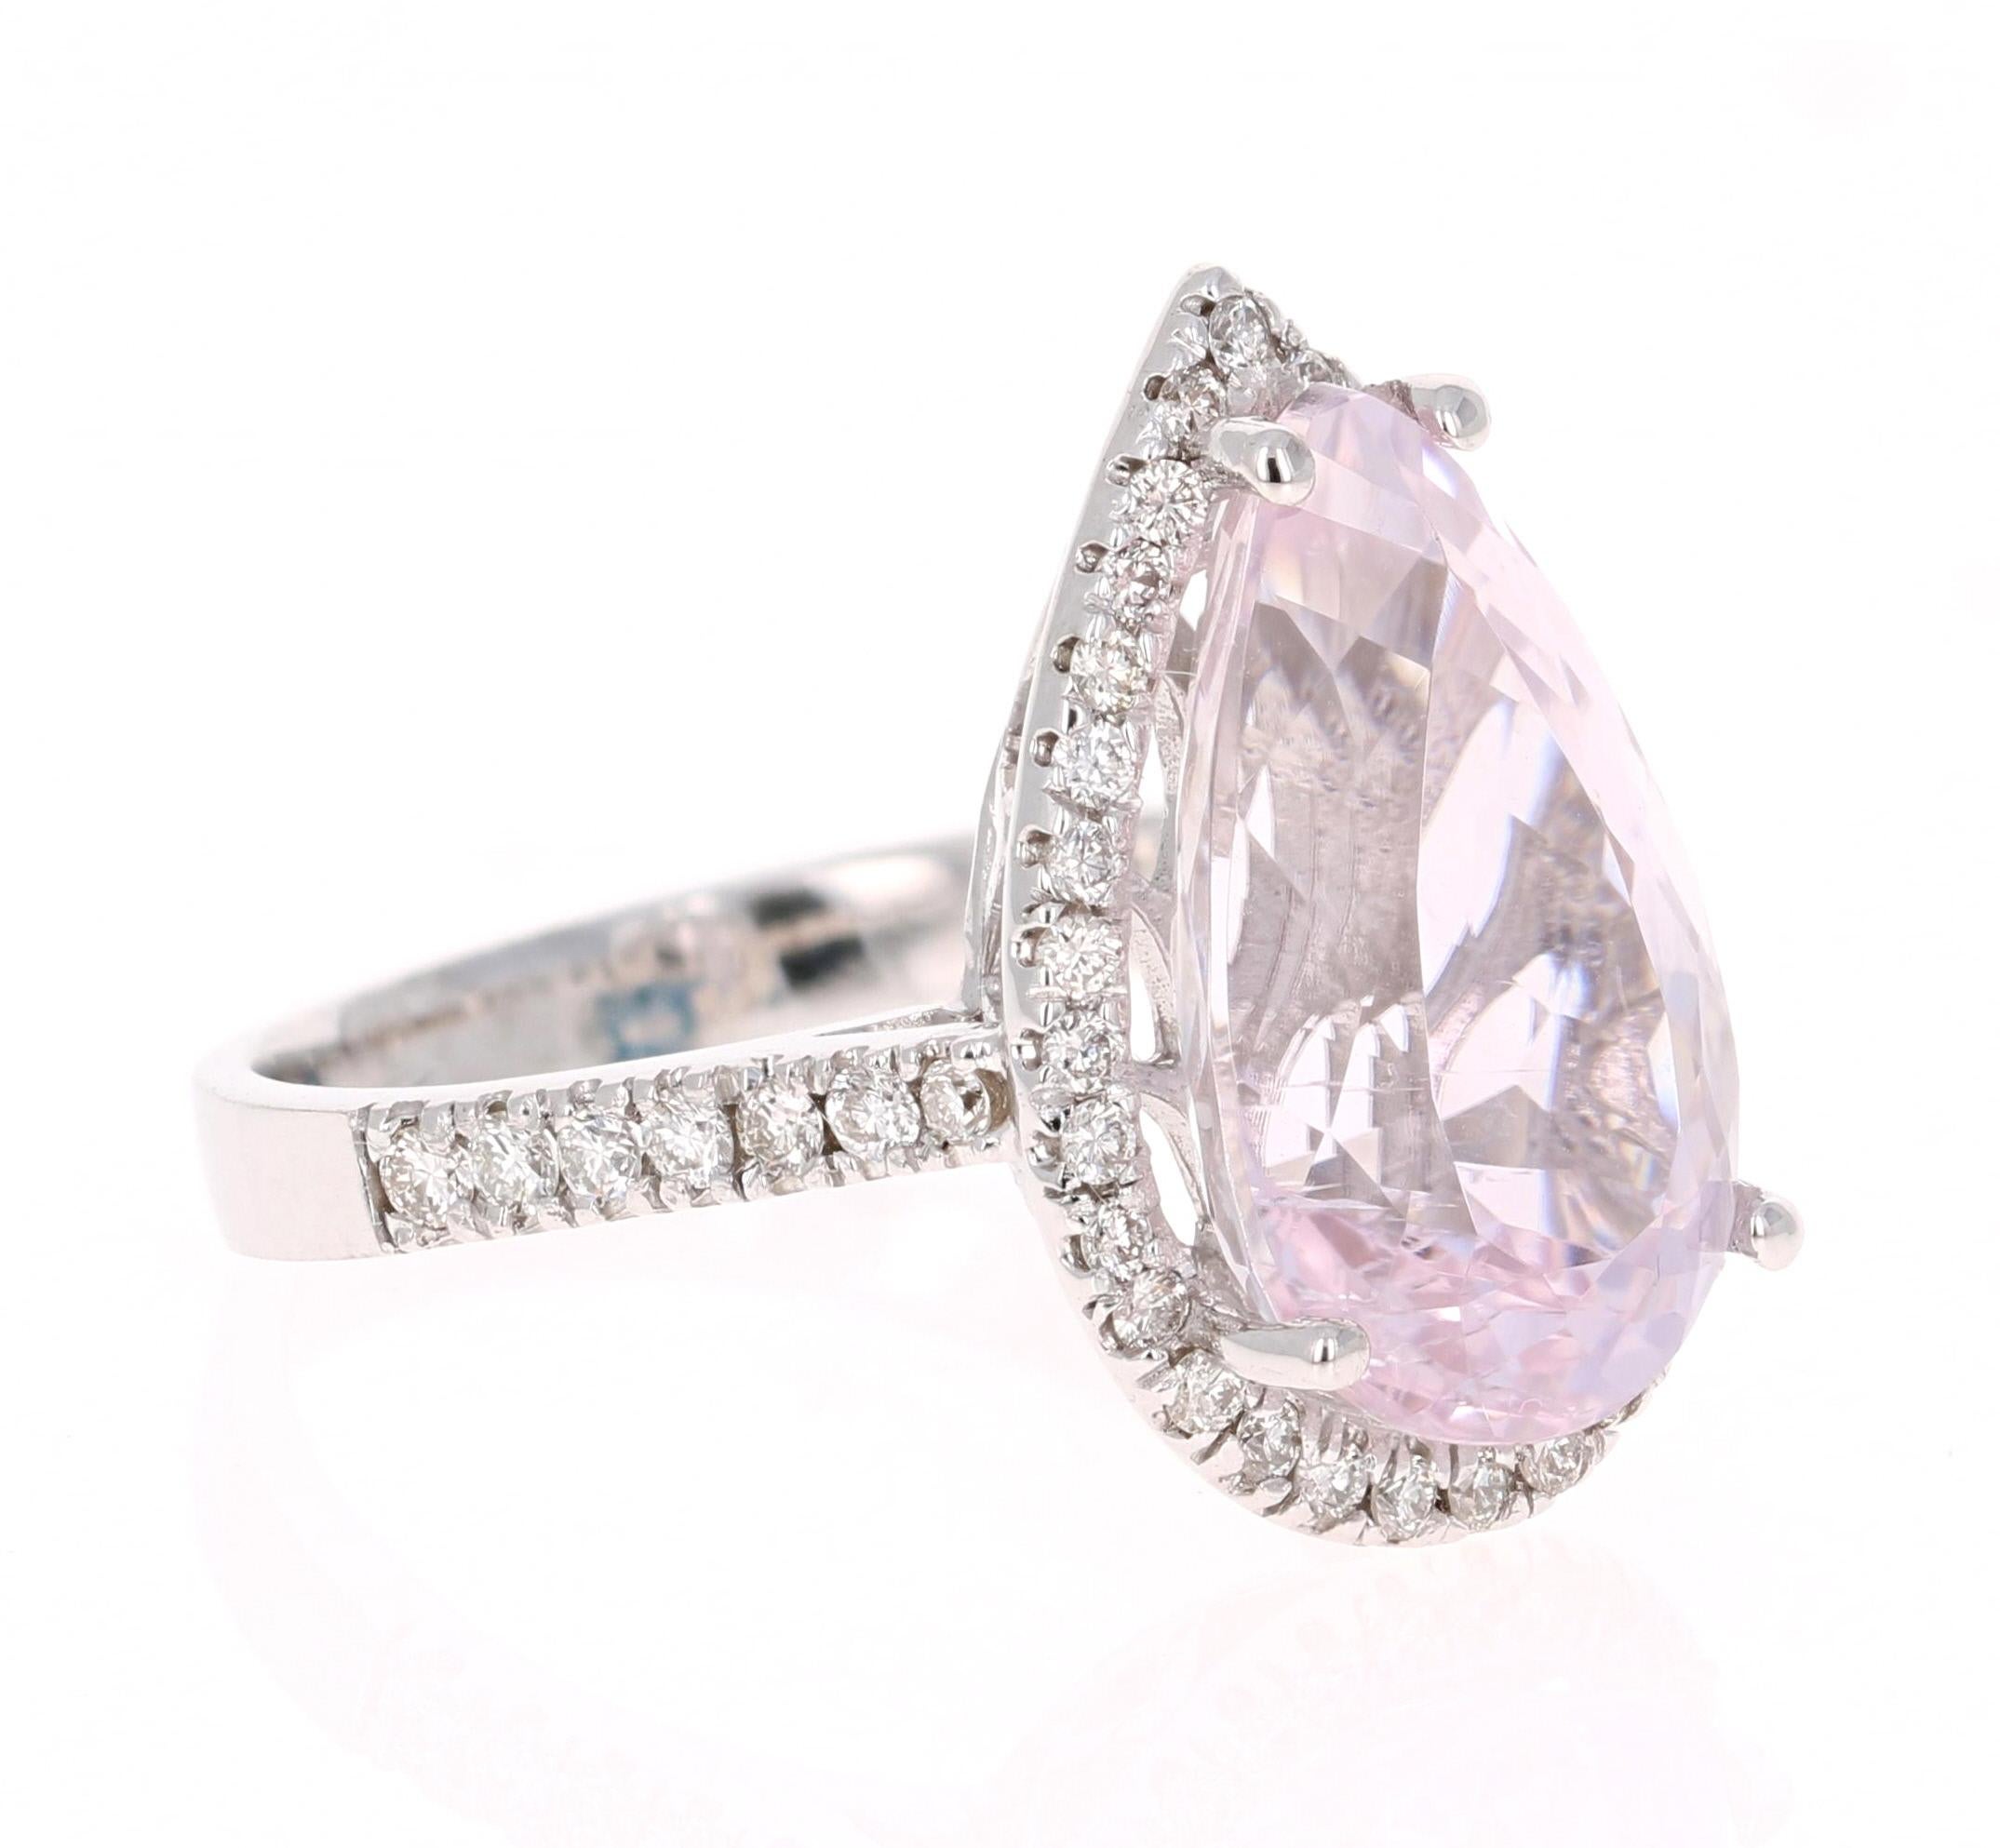 Kunzit Halo Diamant Weißgold Verlobungsring

Eine schöne Verlobungsring Option oder als Alternative zu einem rosa Diamantring! Dieser einfach atemberaubende Kunzit-Diamant-Ring hat einen 7,78 Karat schweren Kunzit im Birnenschliff als Mittelpunkt